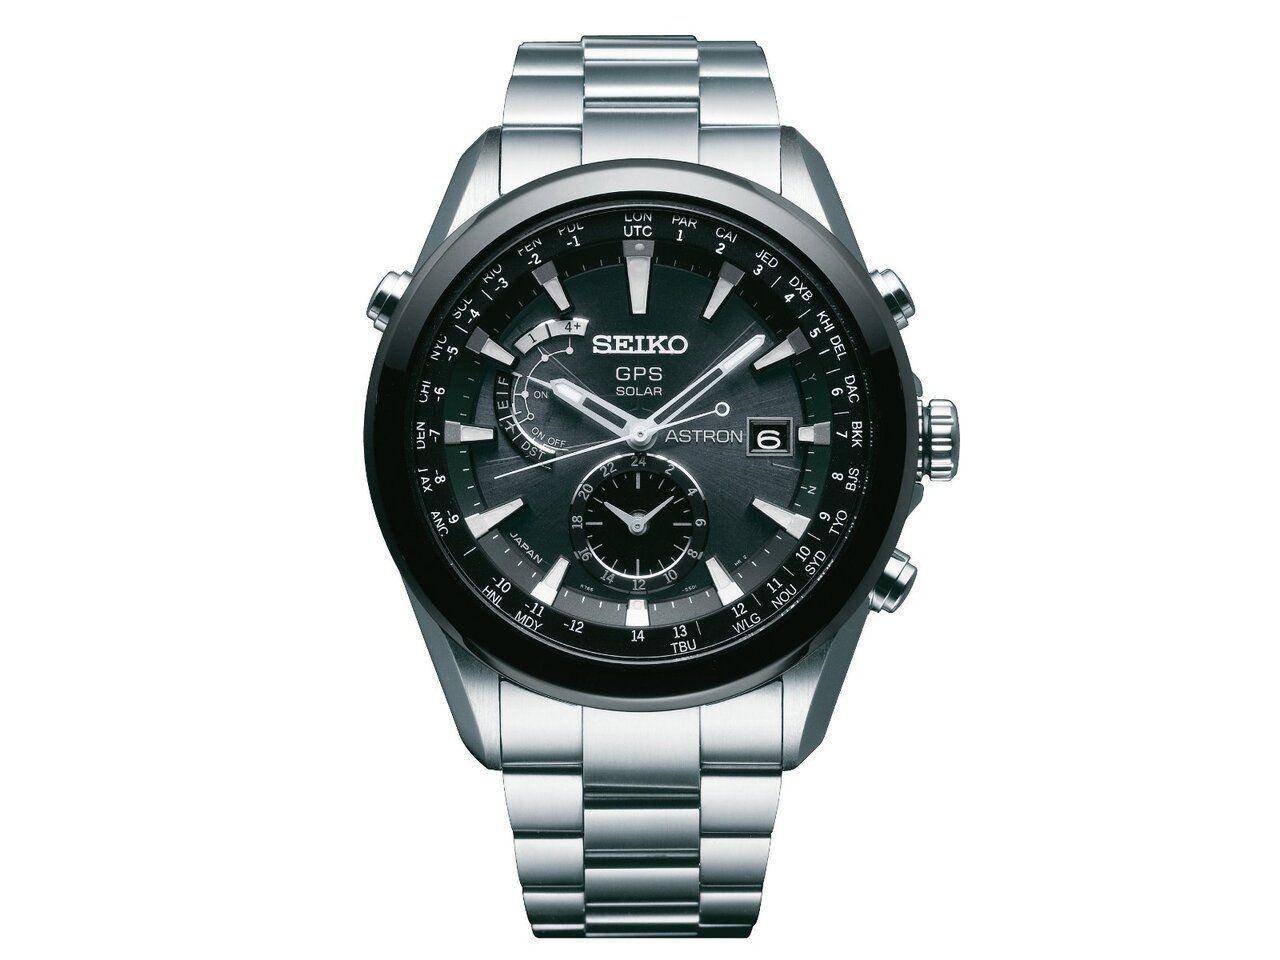 d1352309215-watch-looks-similar-seiko-astron-seiko.jpg